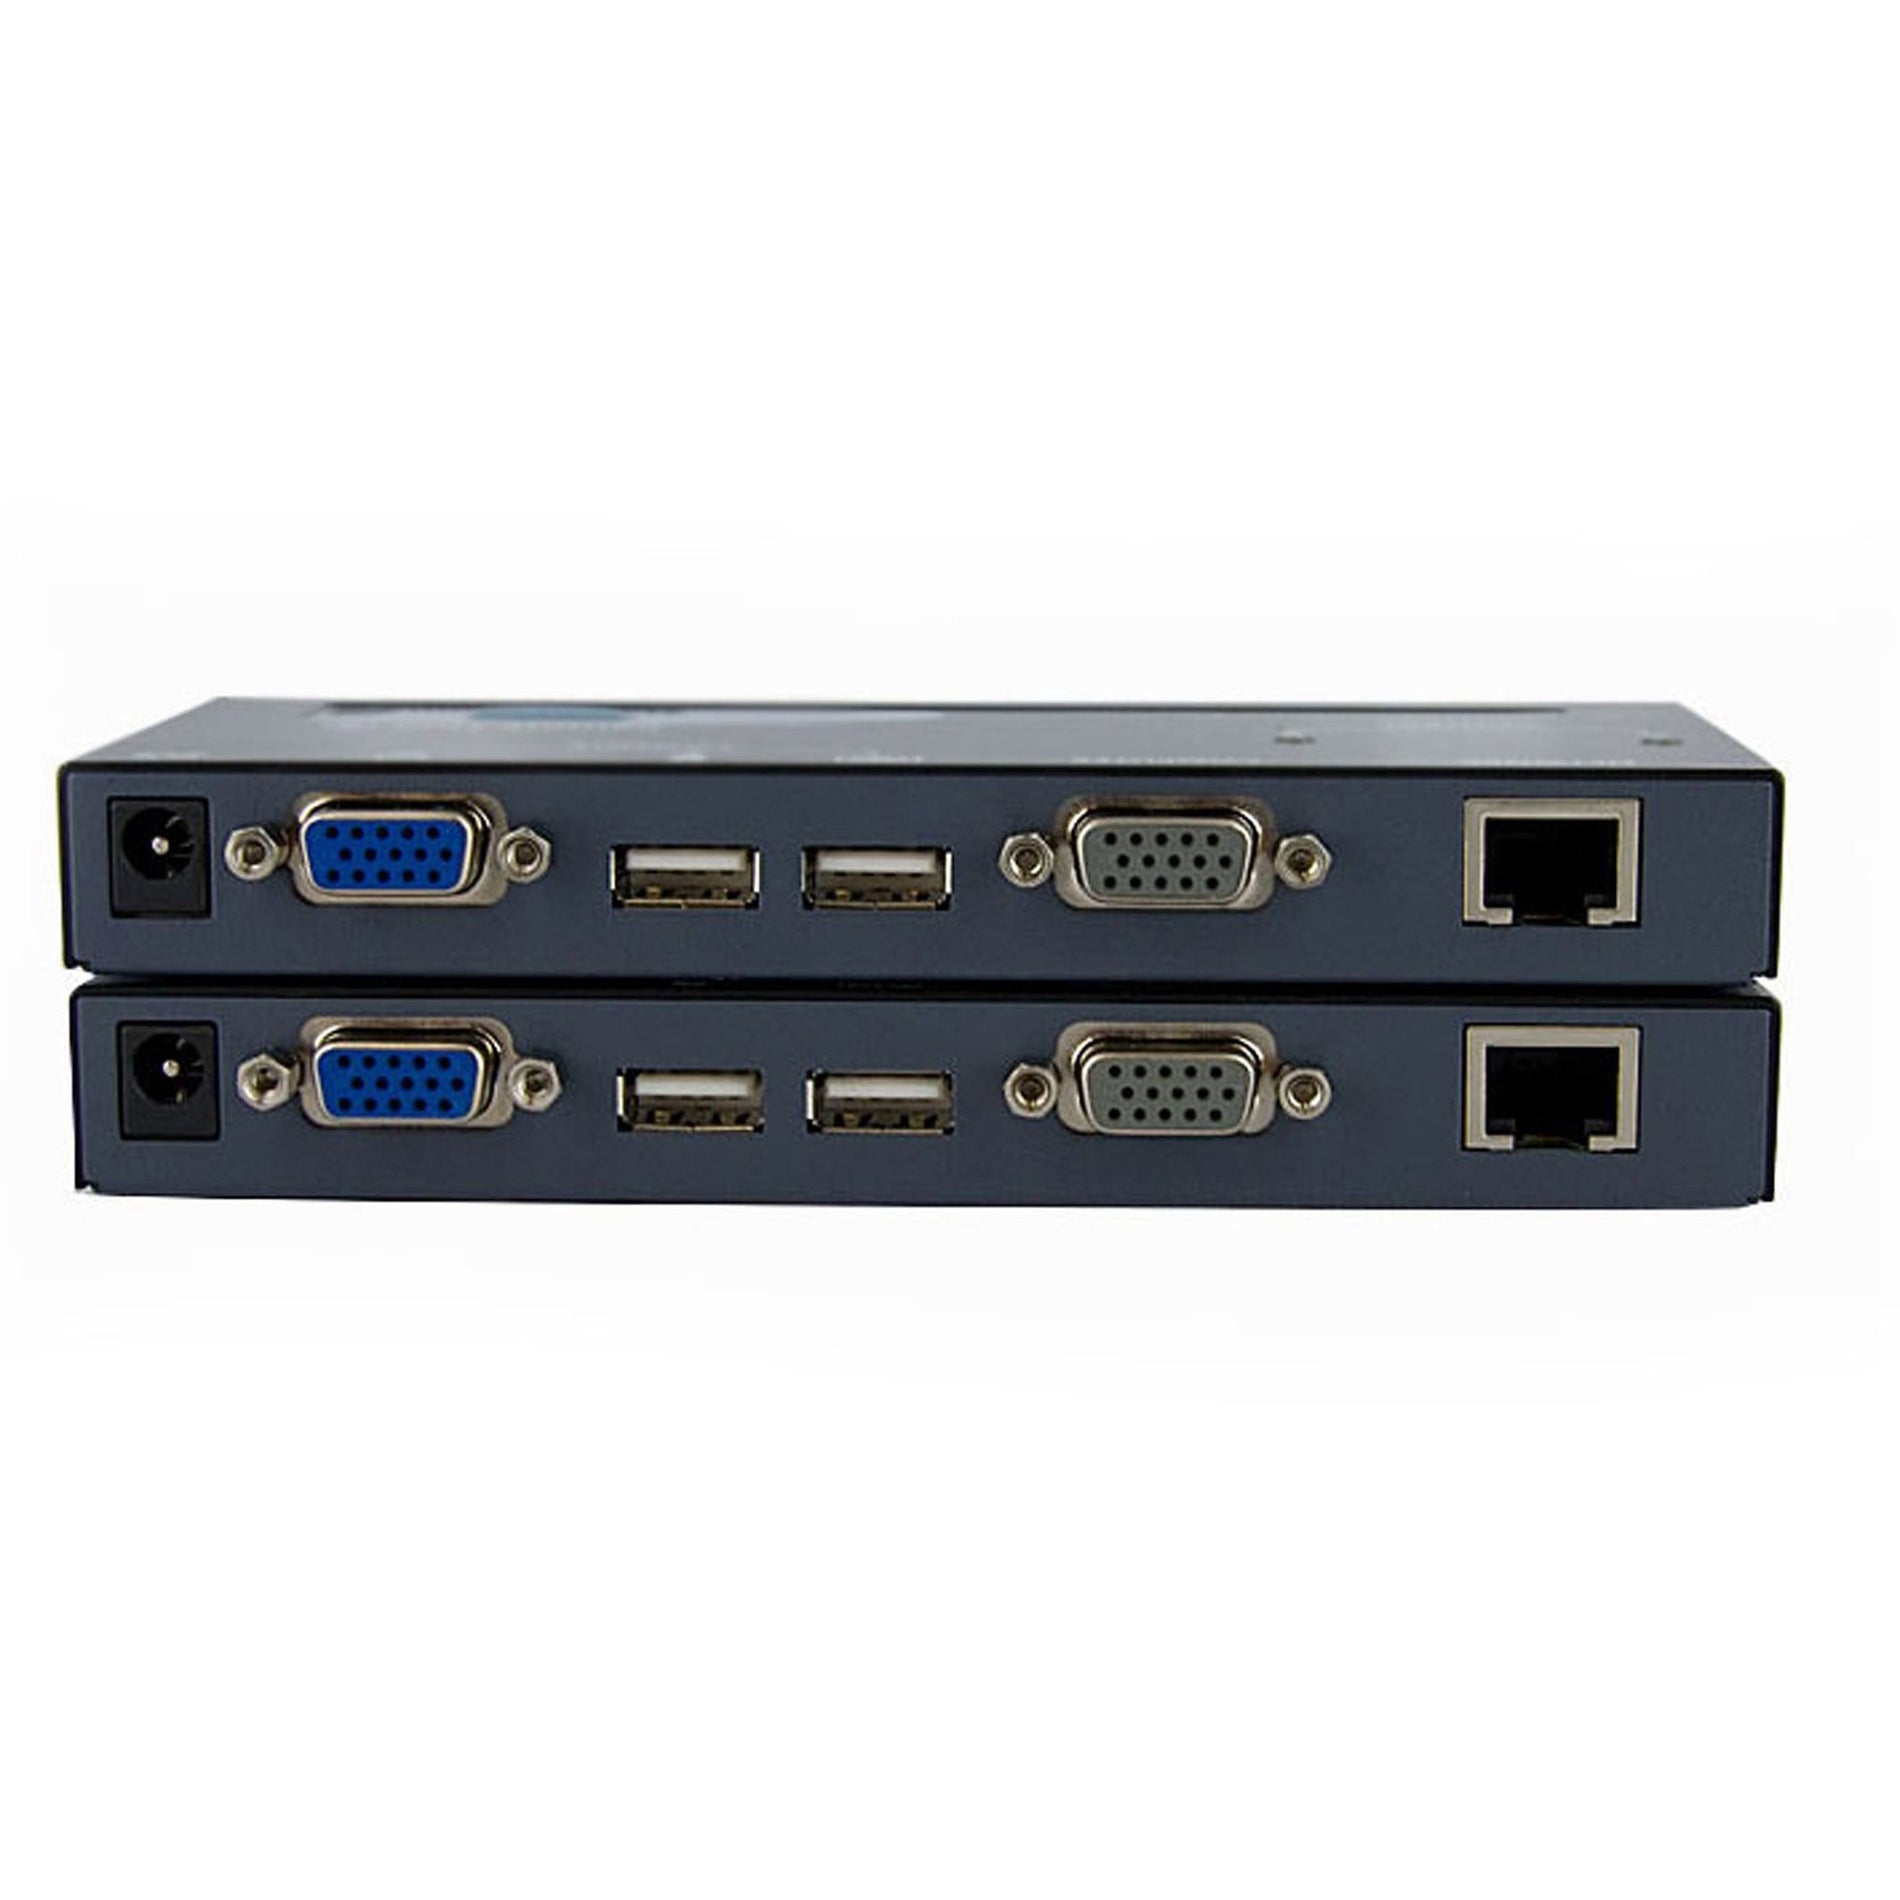 星先科技 SV565UTPU USB VGA KVM 网络控制台扩展器适用于 CAT5 UTP - 500 英尺，将 USB 和 VGA 信号延长至 500 英尺 星先科技 星先